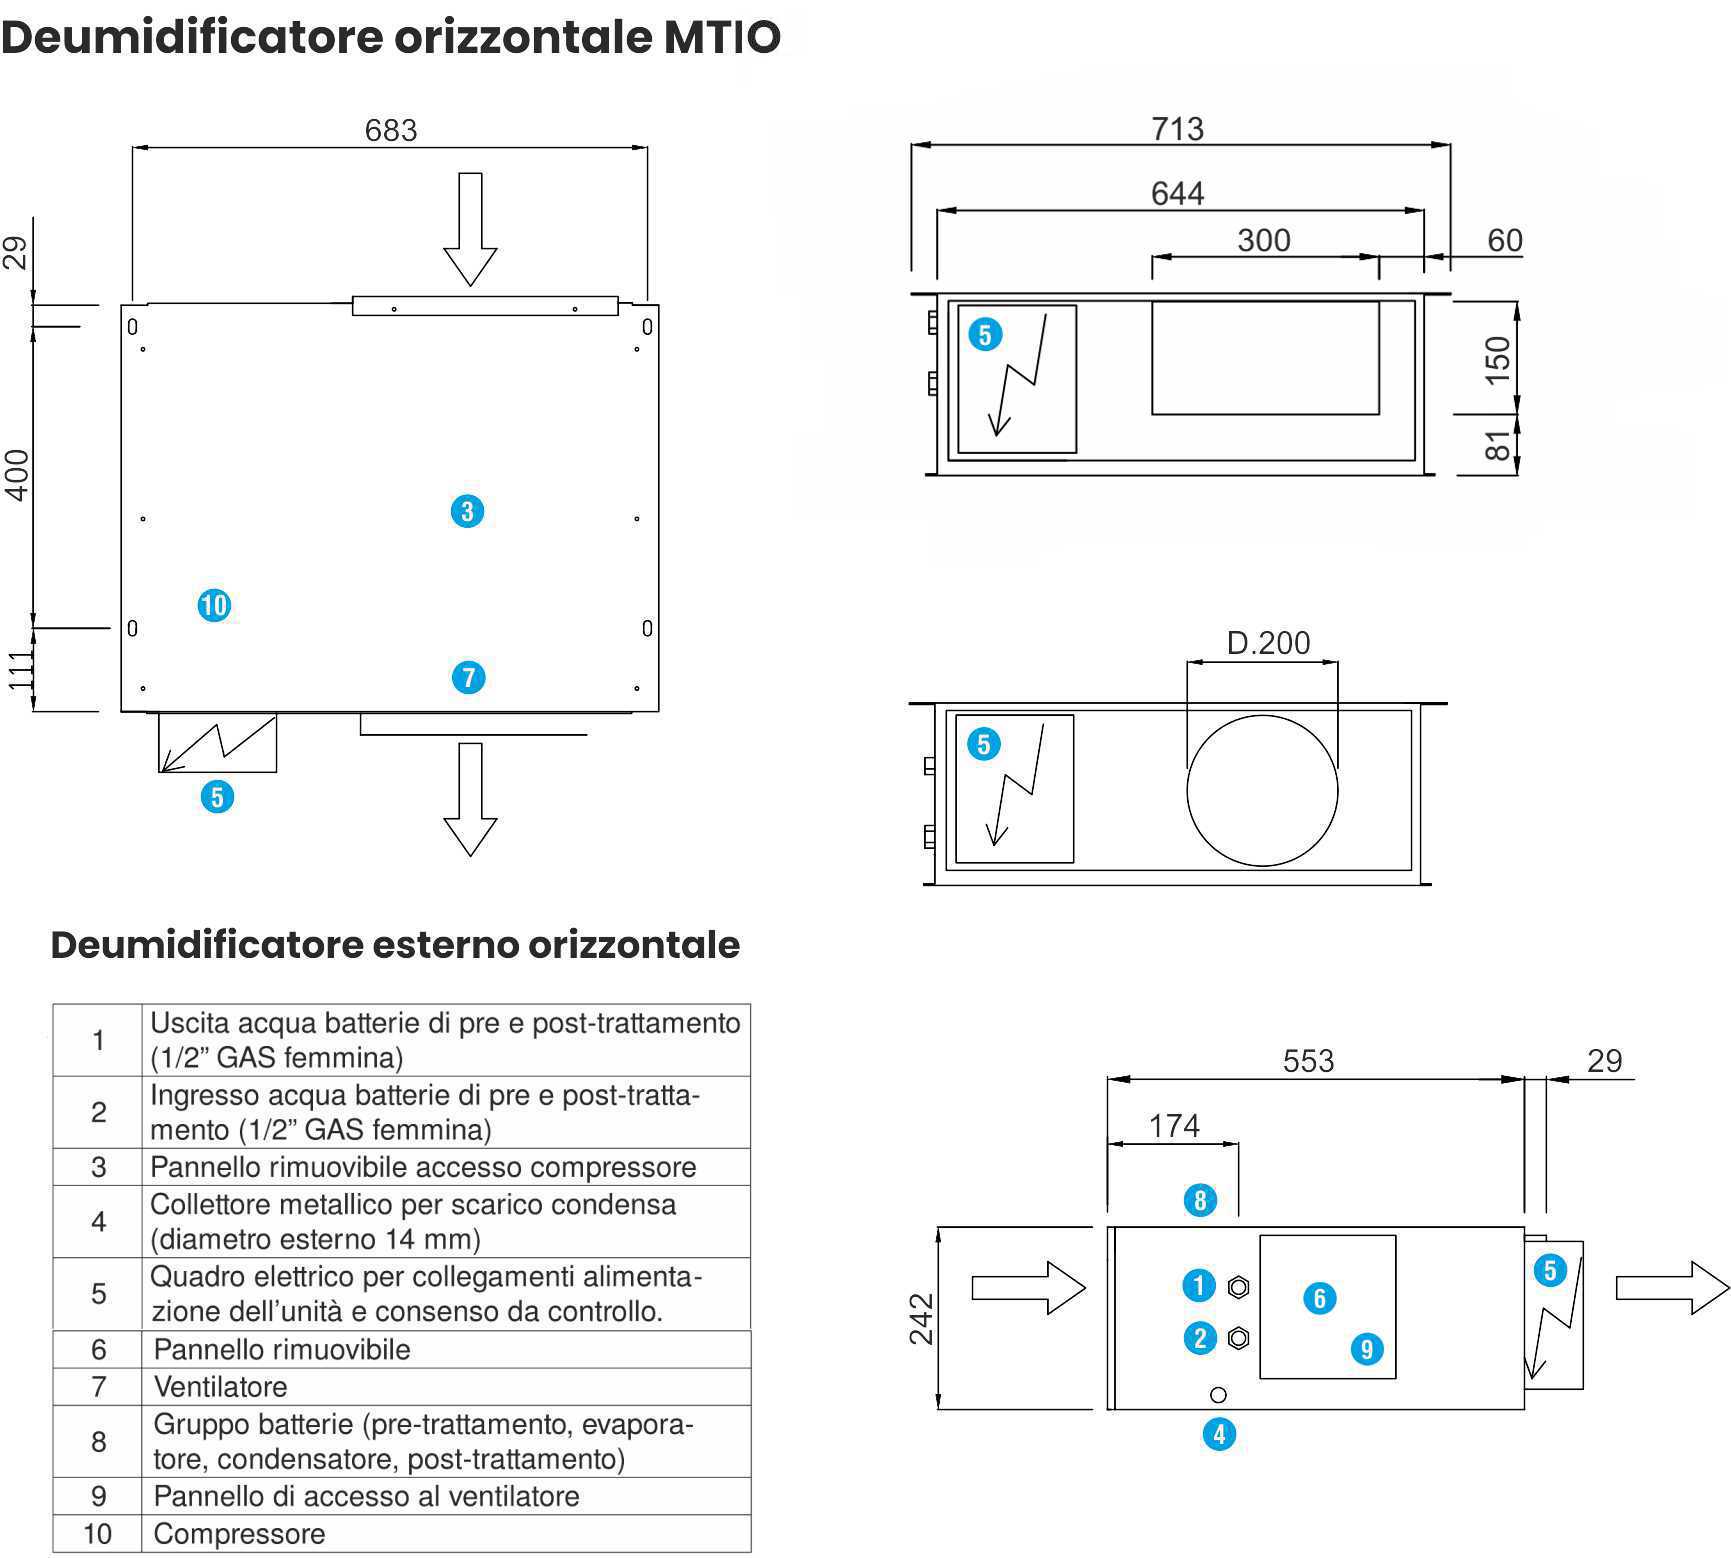 Deumidificatore-Orizzontale_Serie-MTIO_Dati-Tecnici